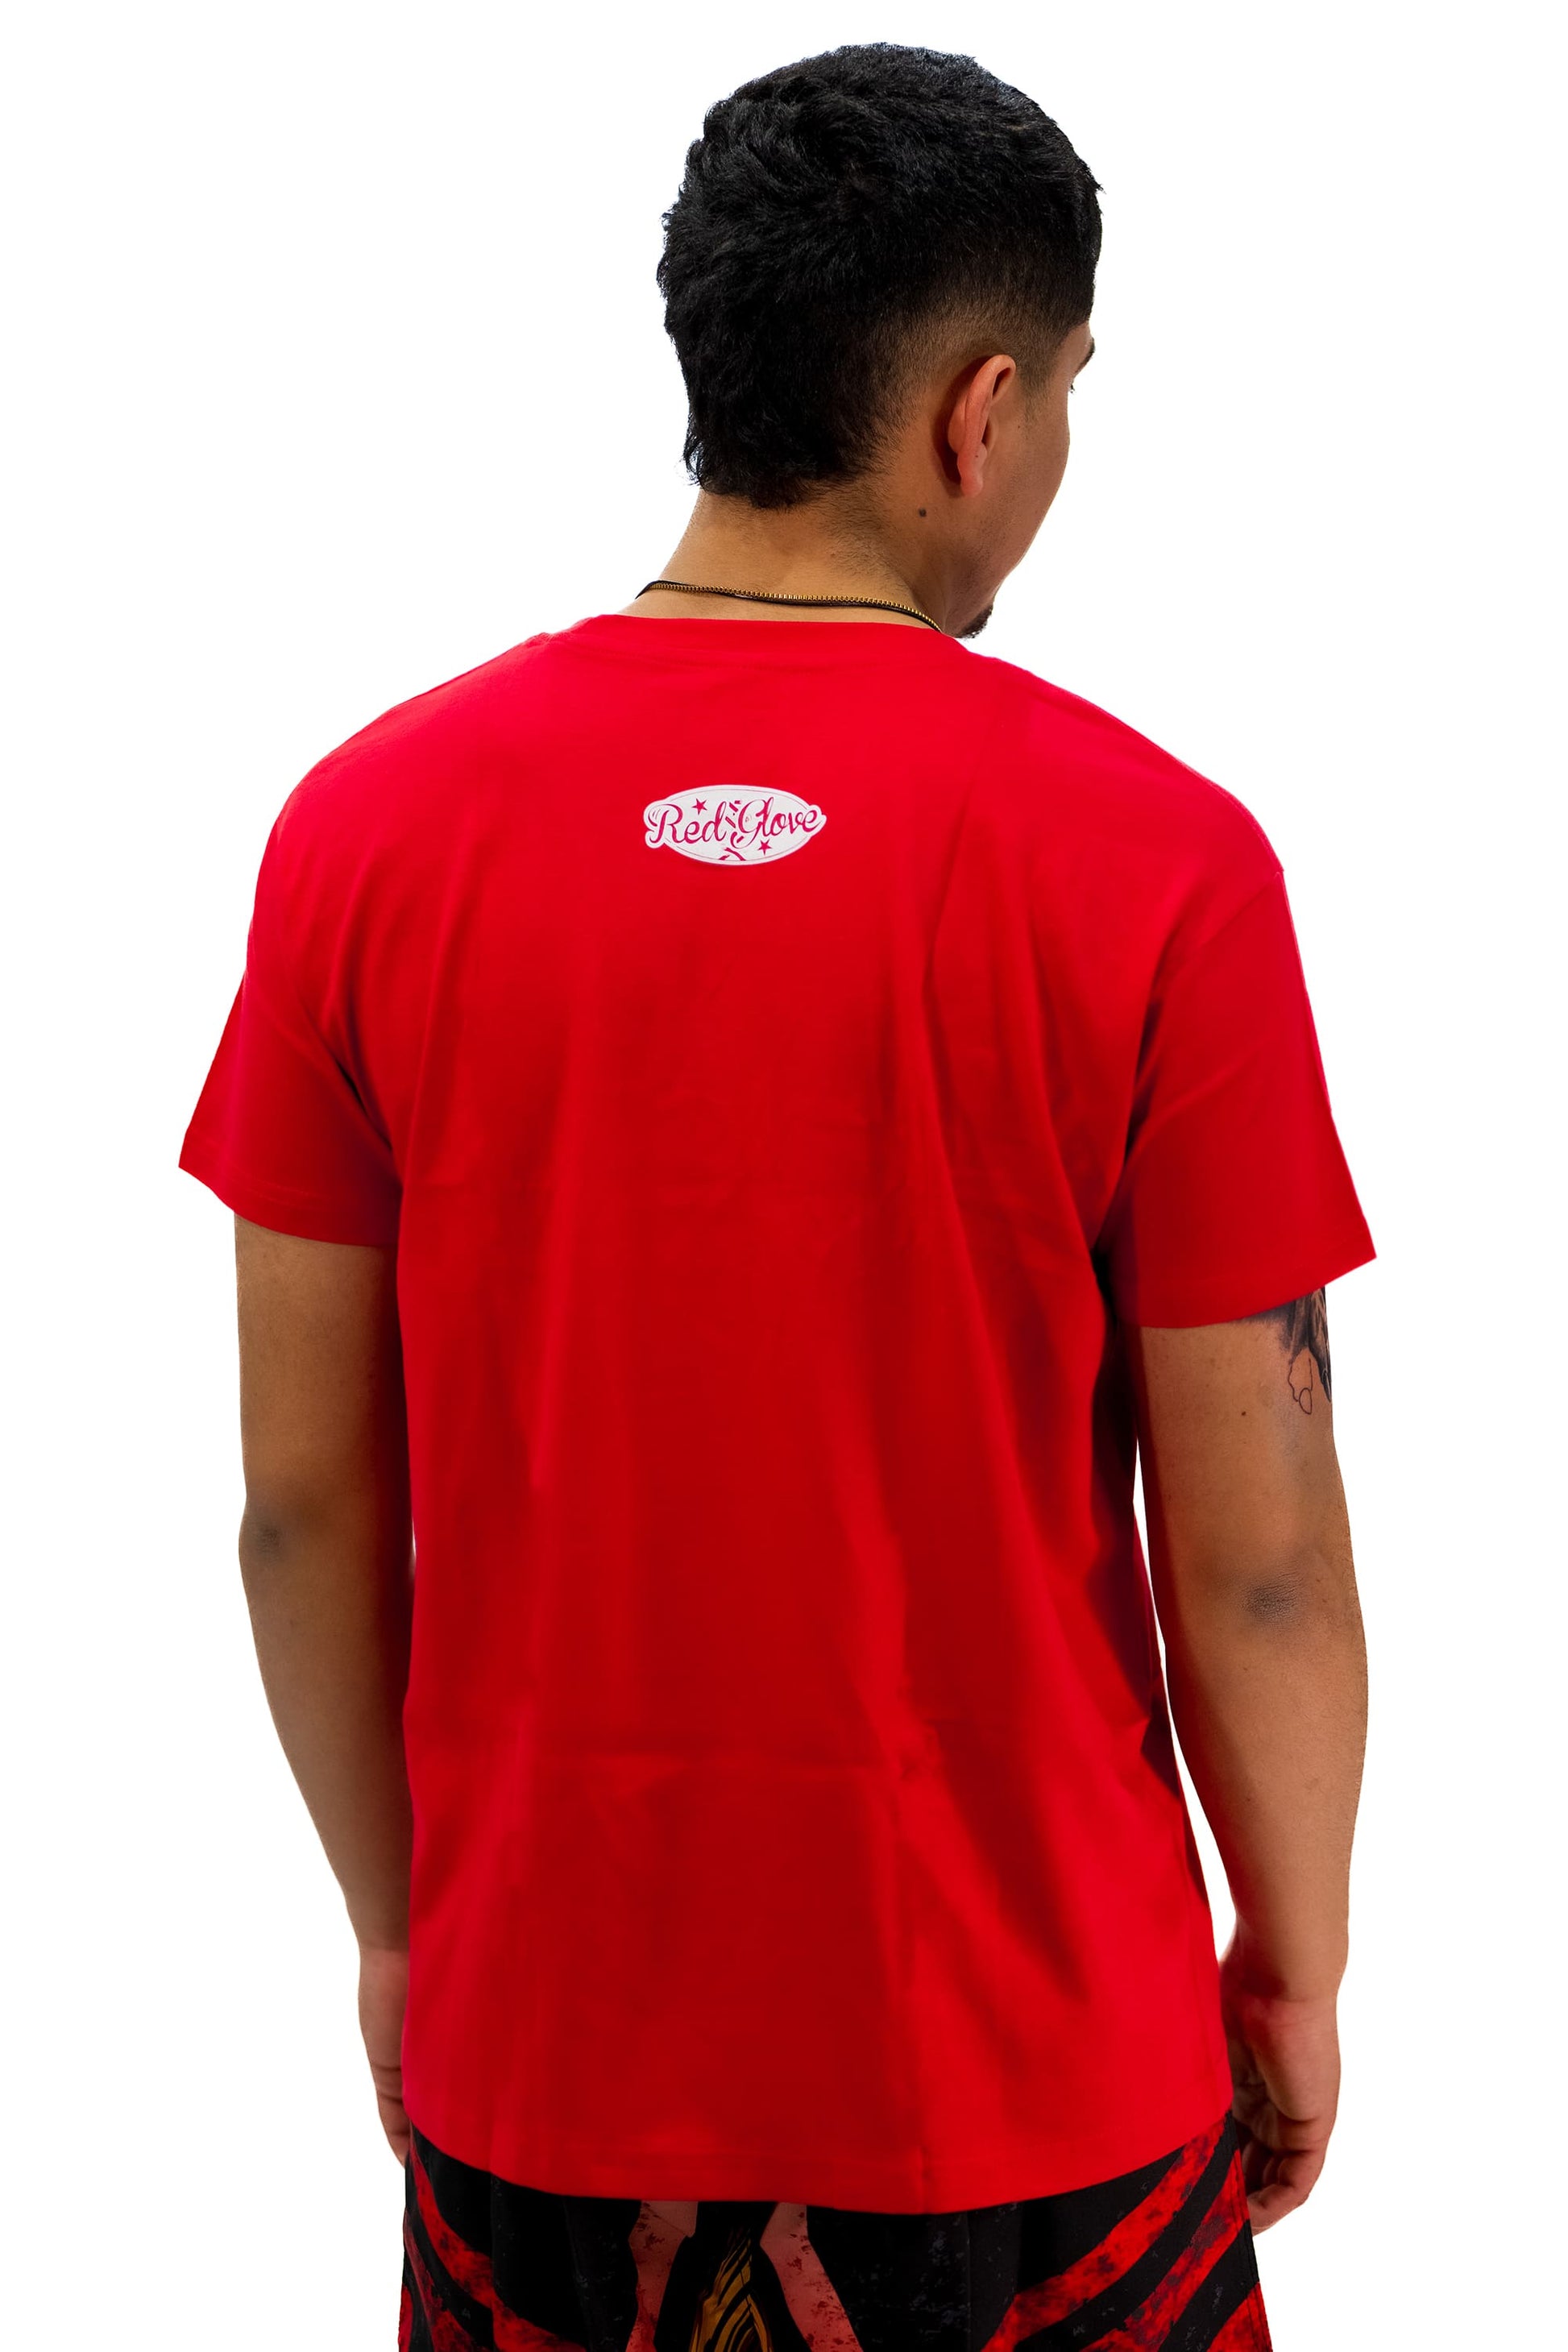 Camiseta Redglove Warrior Lifestyle Roja - Redglove